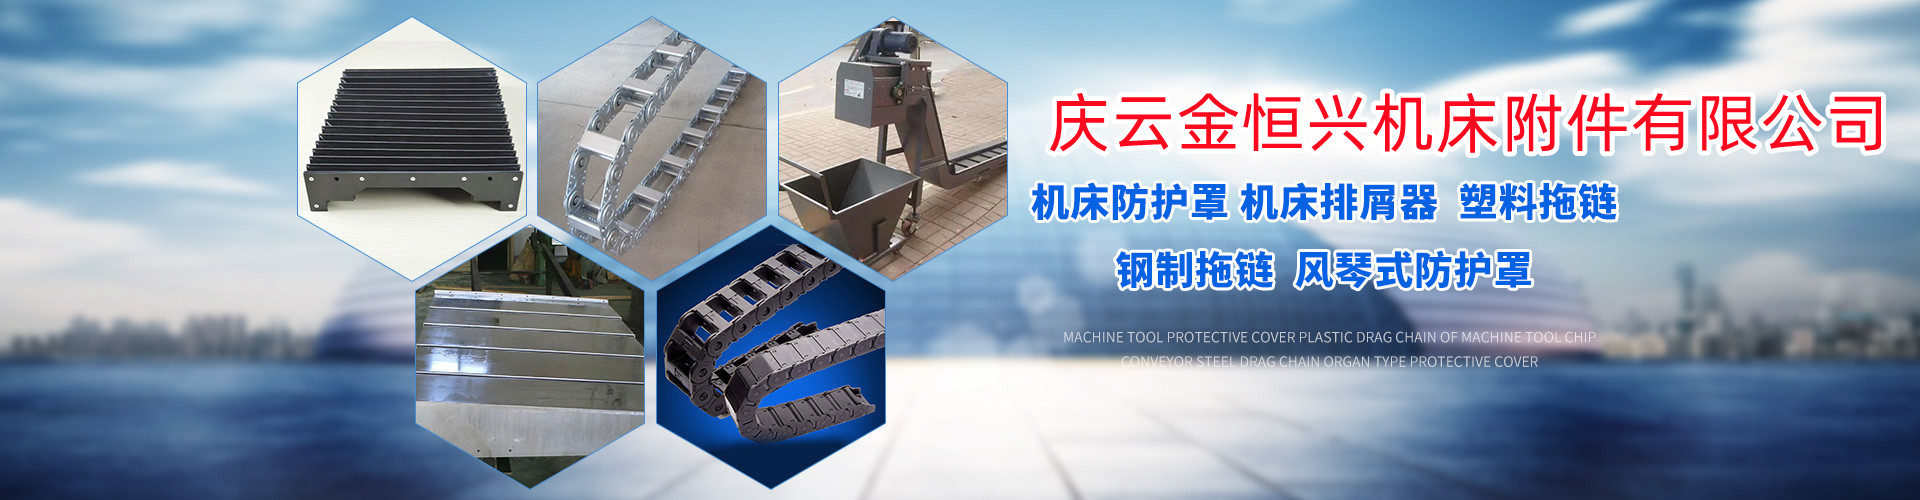 汉川机床HGMC25RA防护罩供应